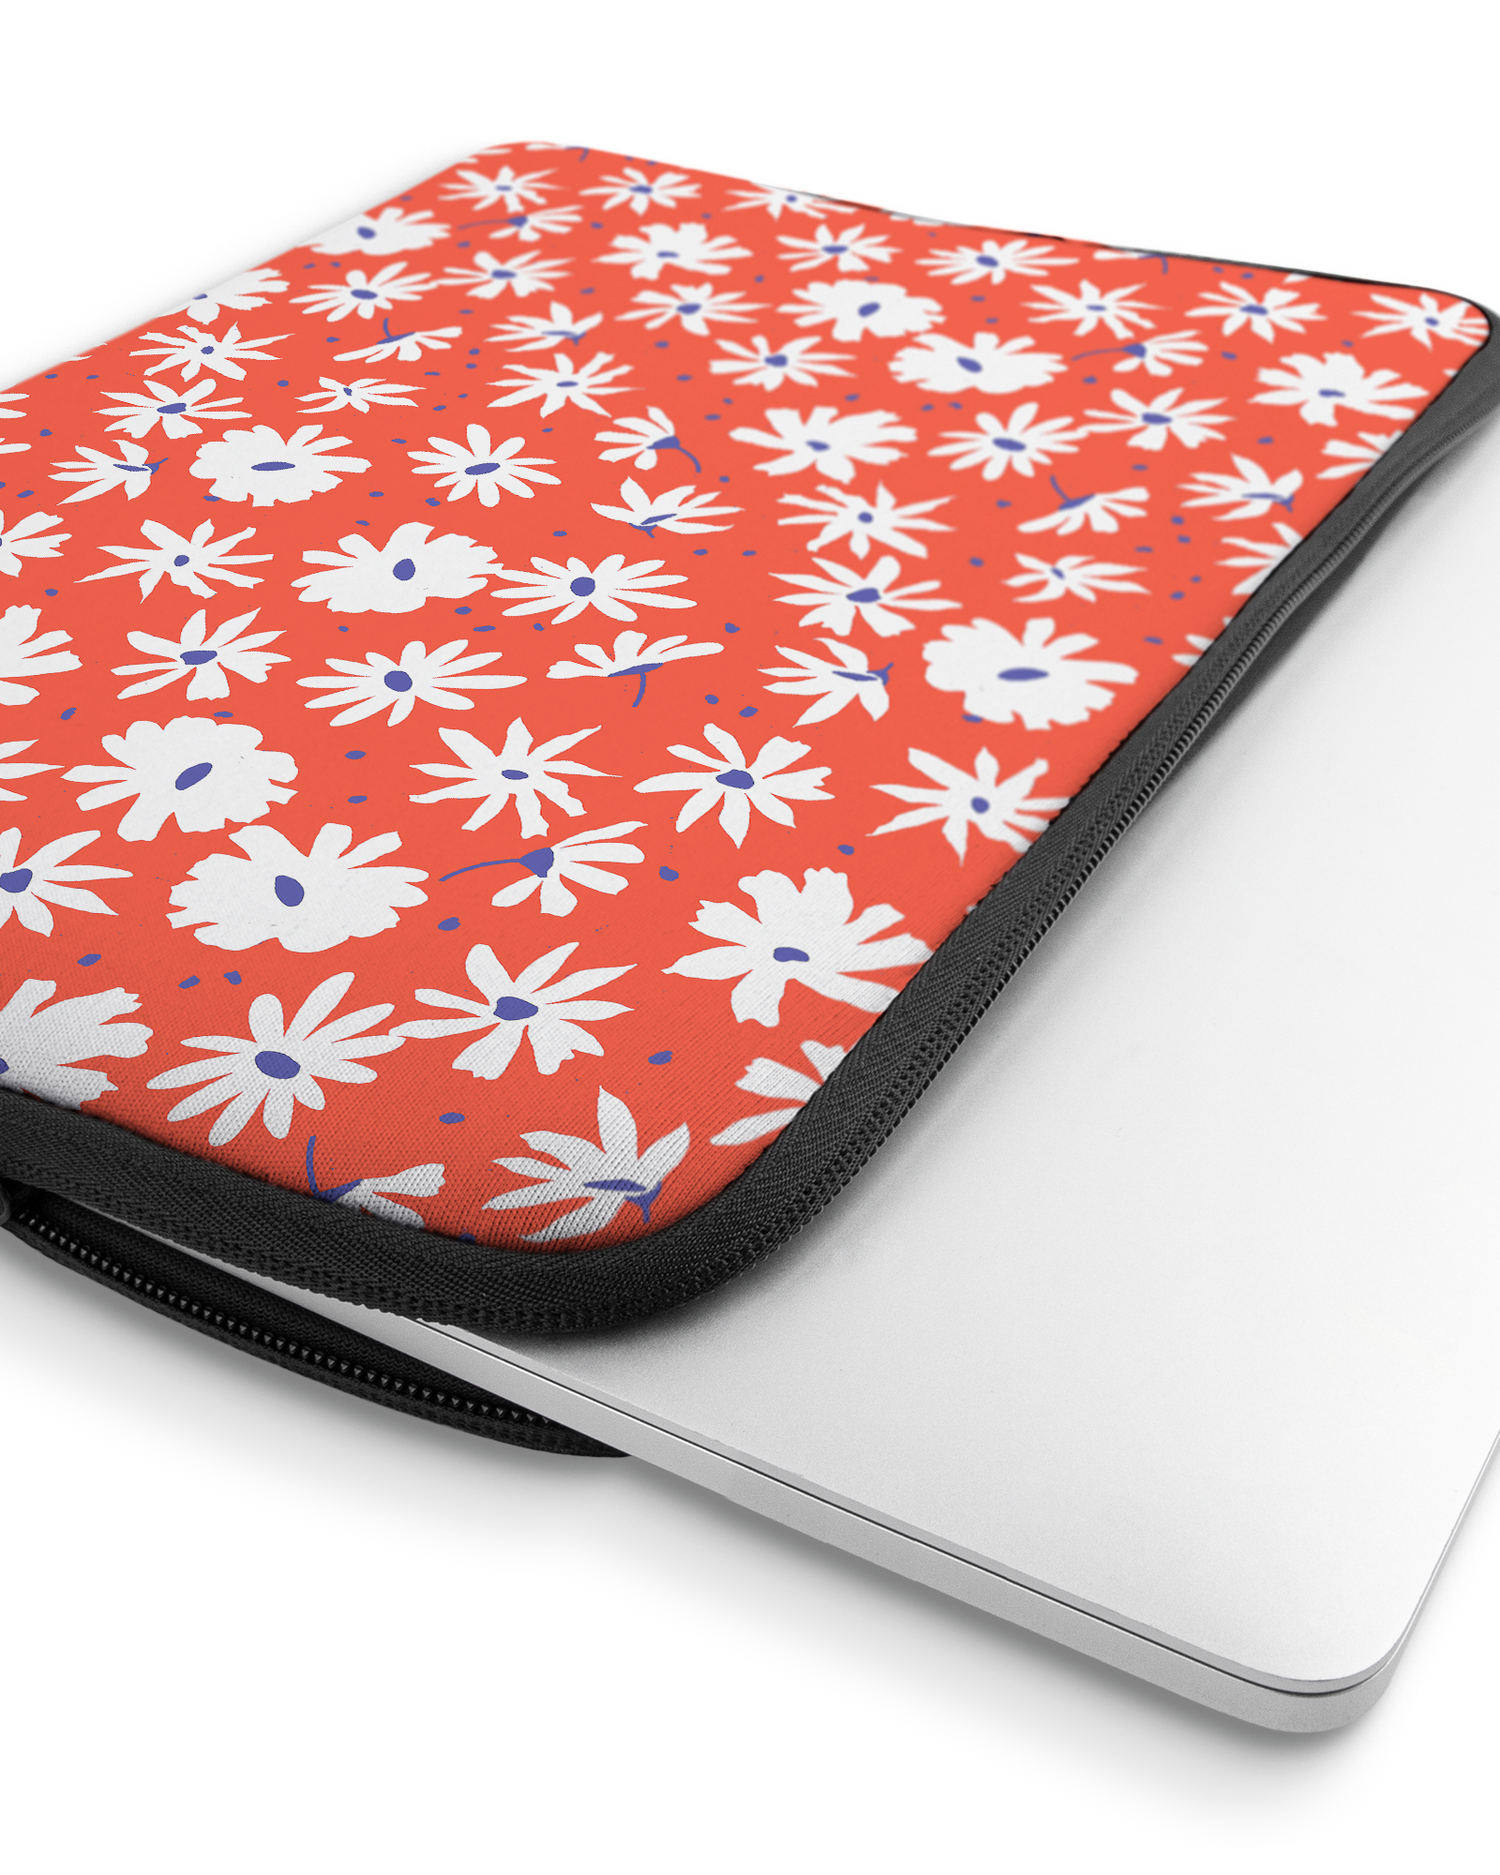 Retro Daisy Laptophülle 16 Zoll mit Gerät im Inneren